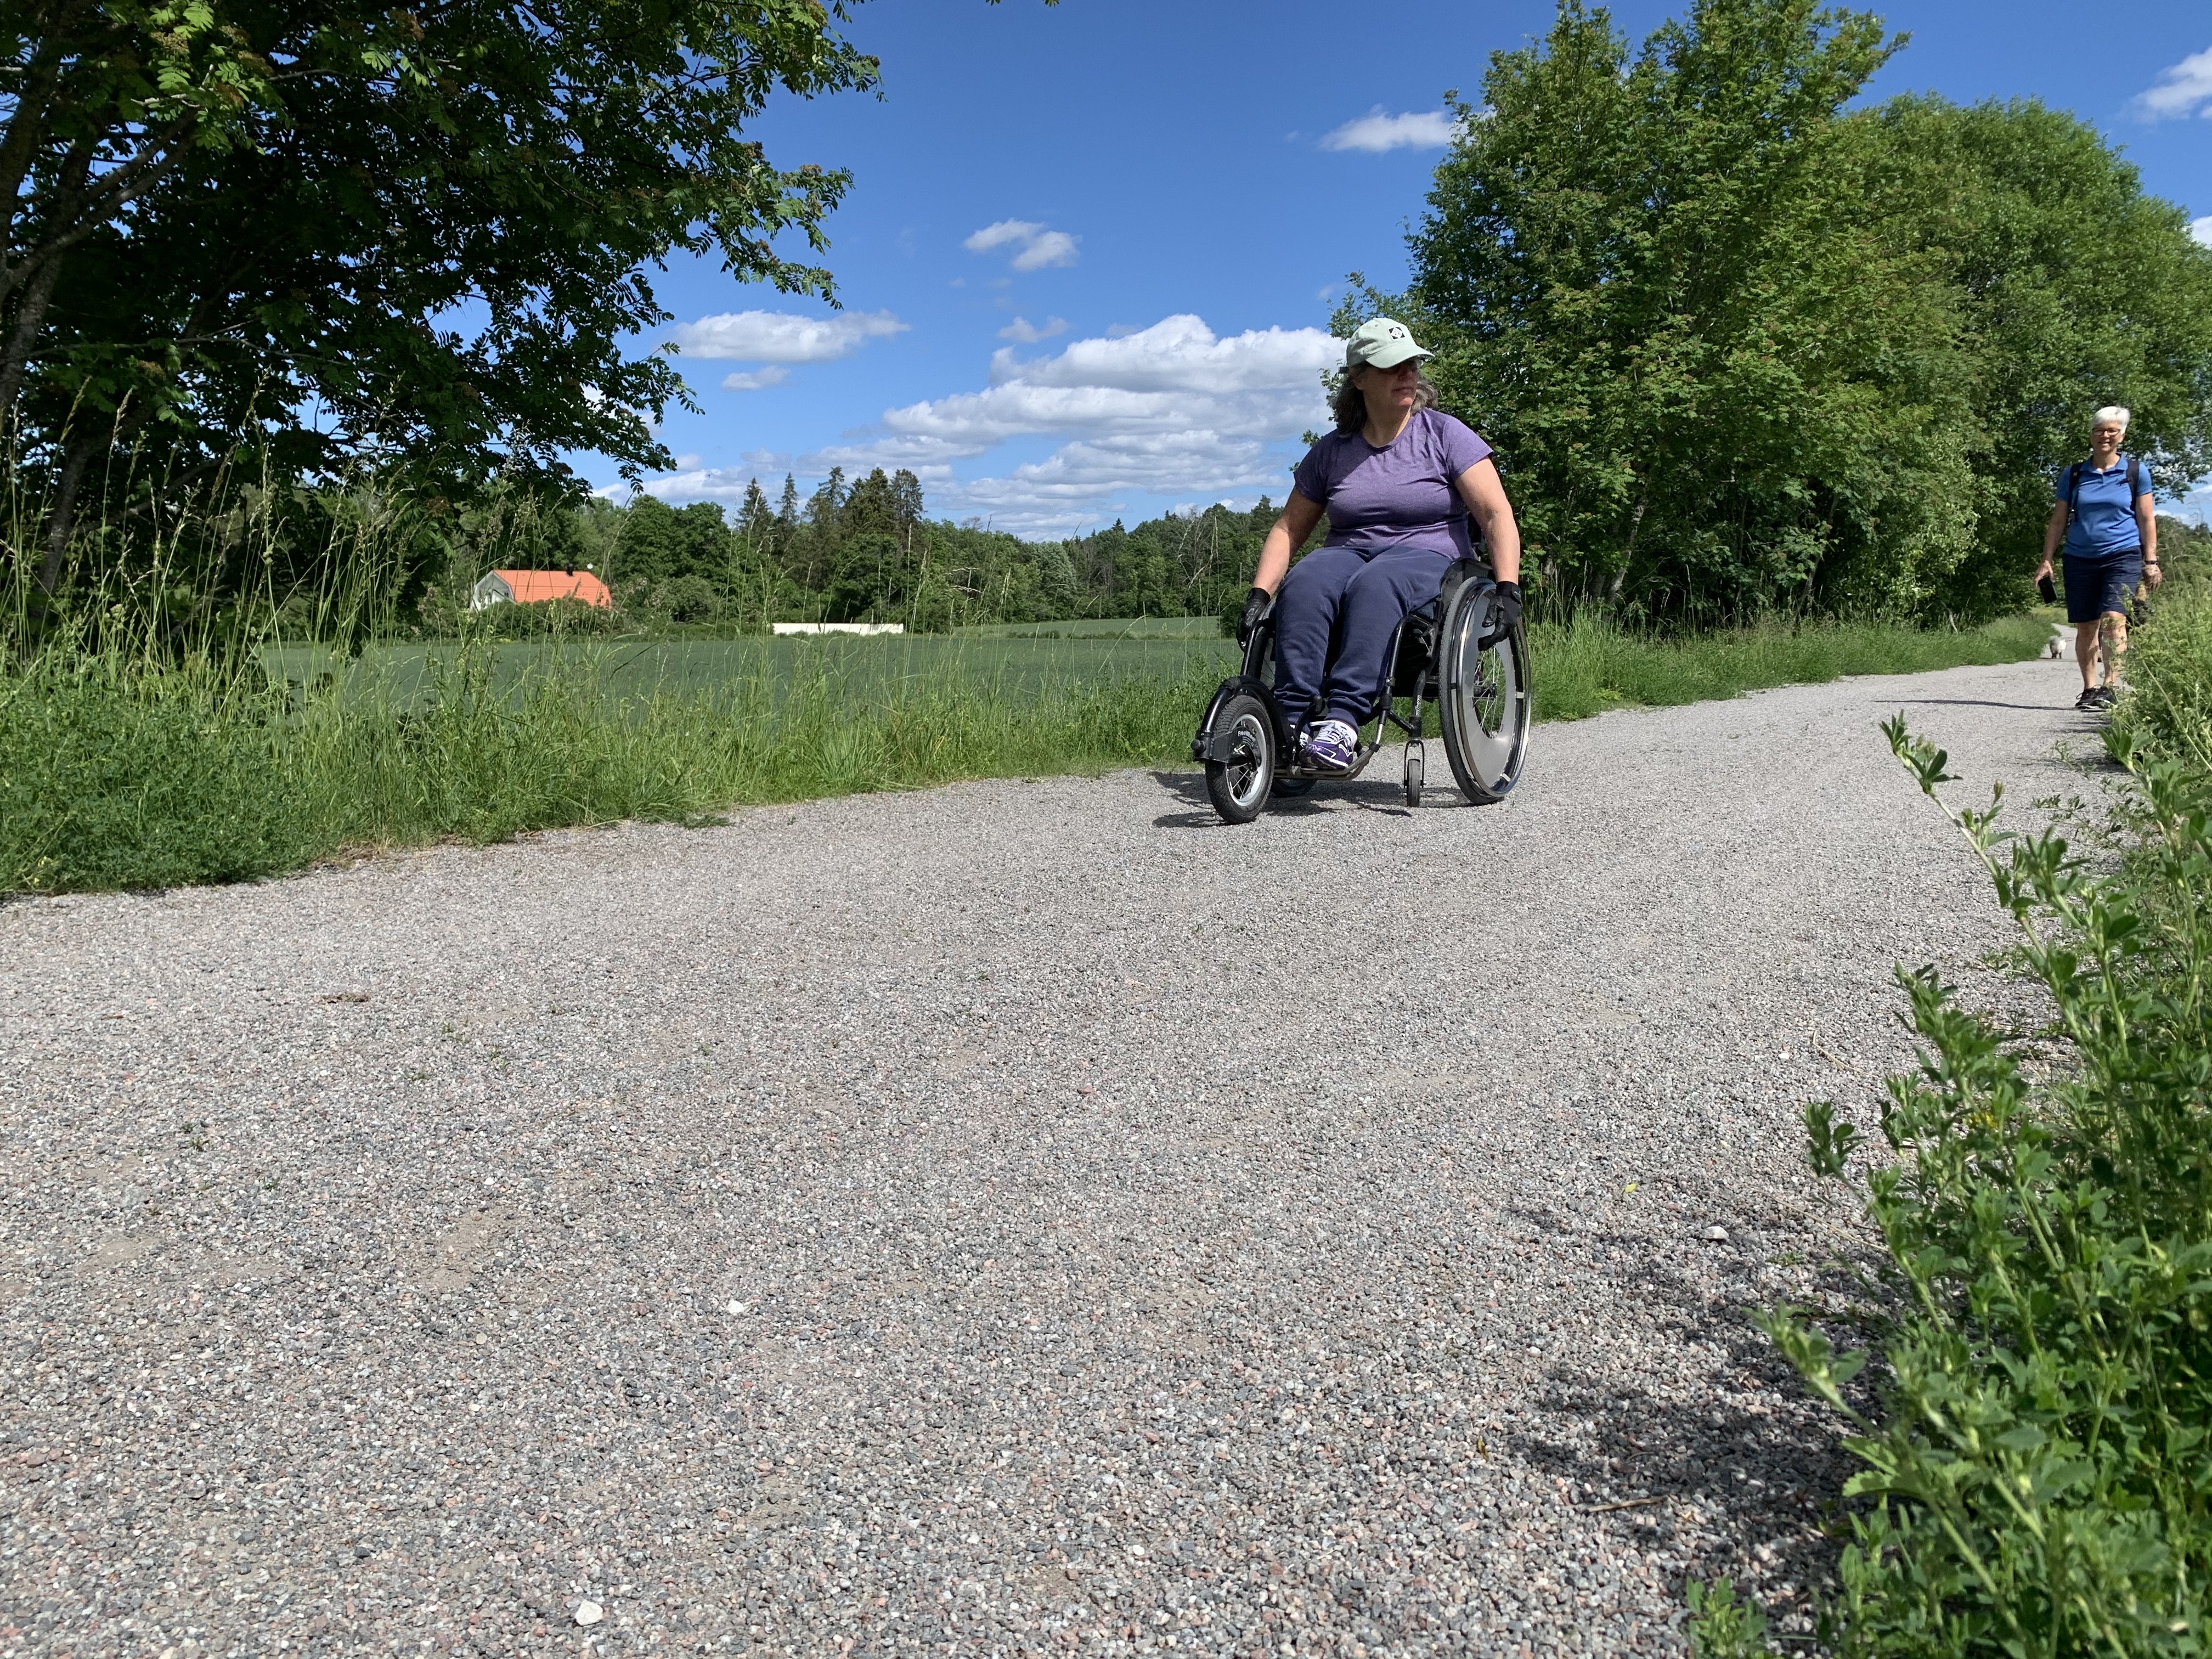 En kvinna i manuell rullstol åker på en bred grusstig som ser jämn ut.